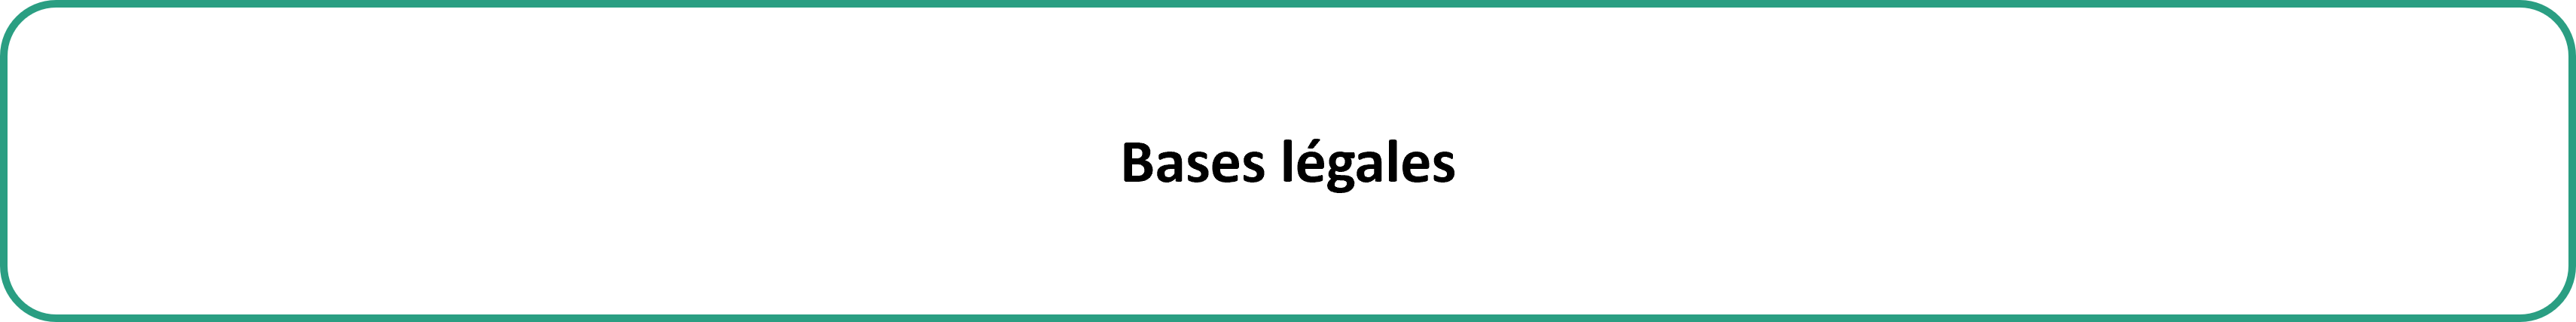 Bases légales